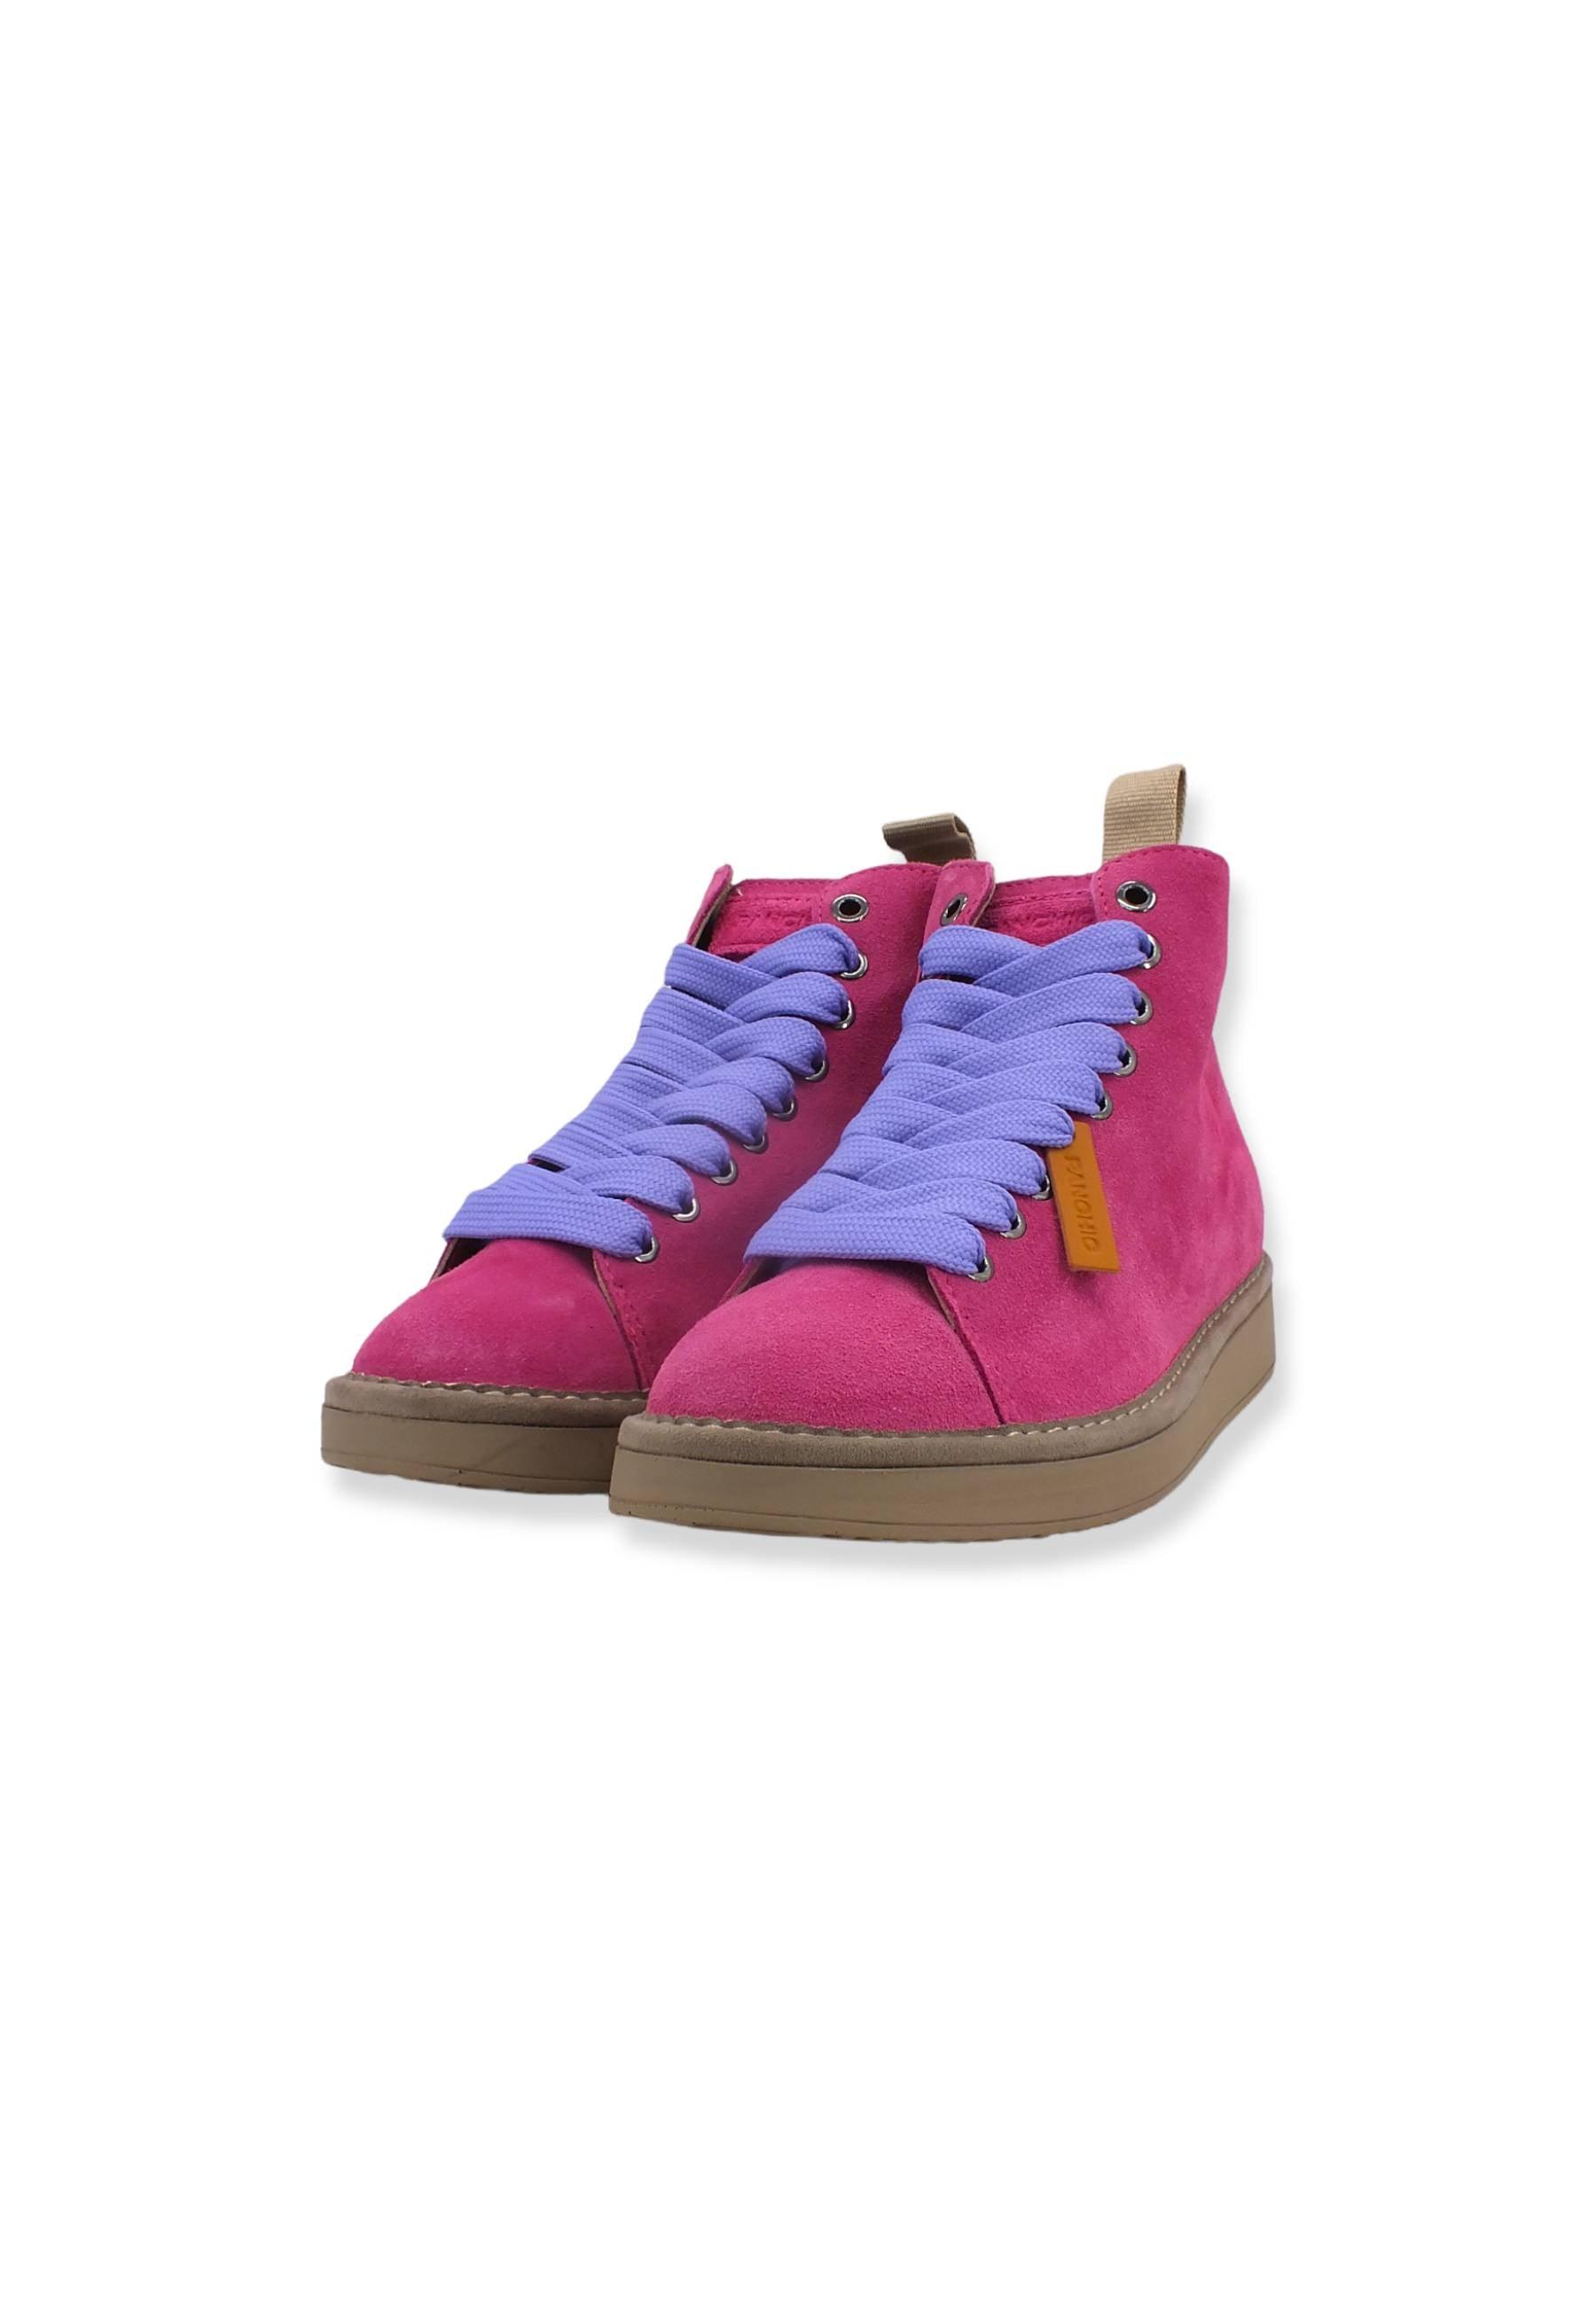 PAN CHIC Ankle Boot Sneaker Donna Dancing Pink Urban Violet P01W1400200005 - Sandrini Calzature e Abbigliamento